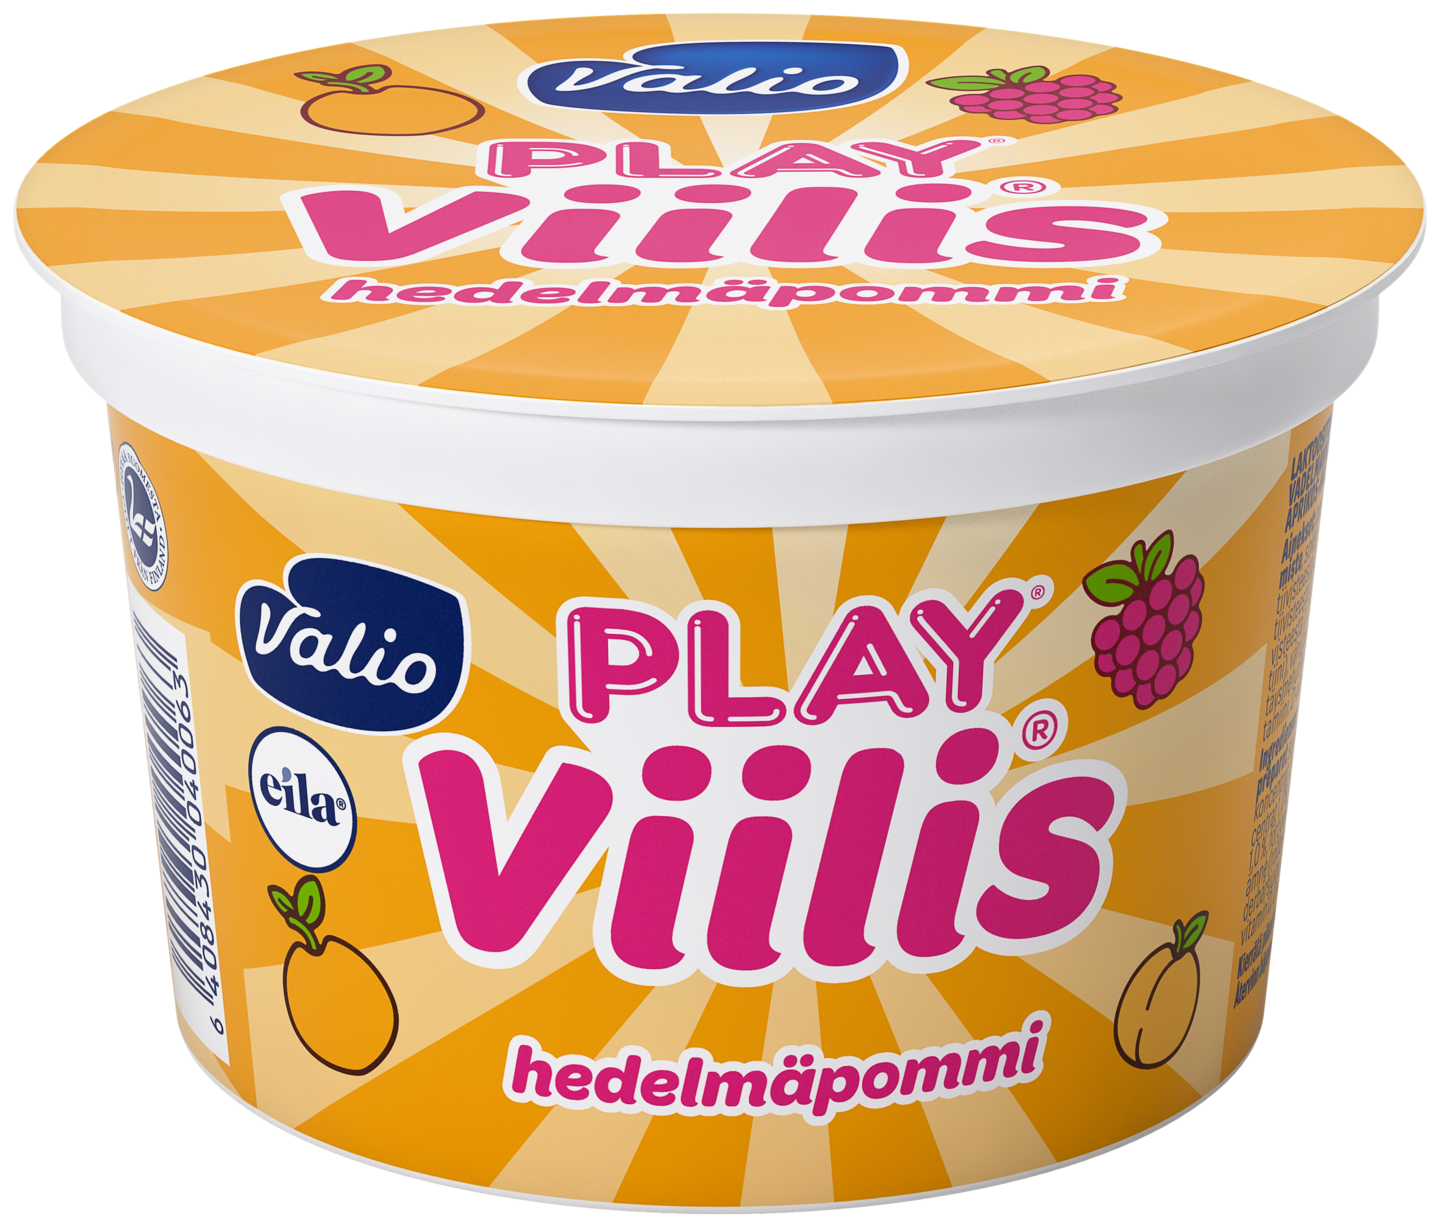 Valio Play Viilis 200g hedelmäpommi laktoositon